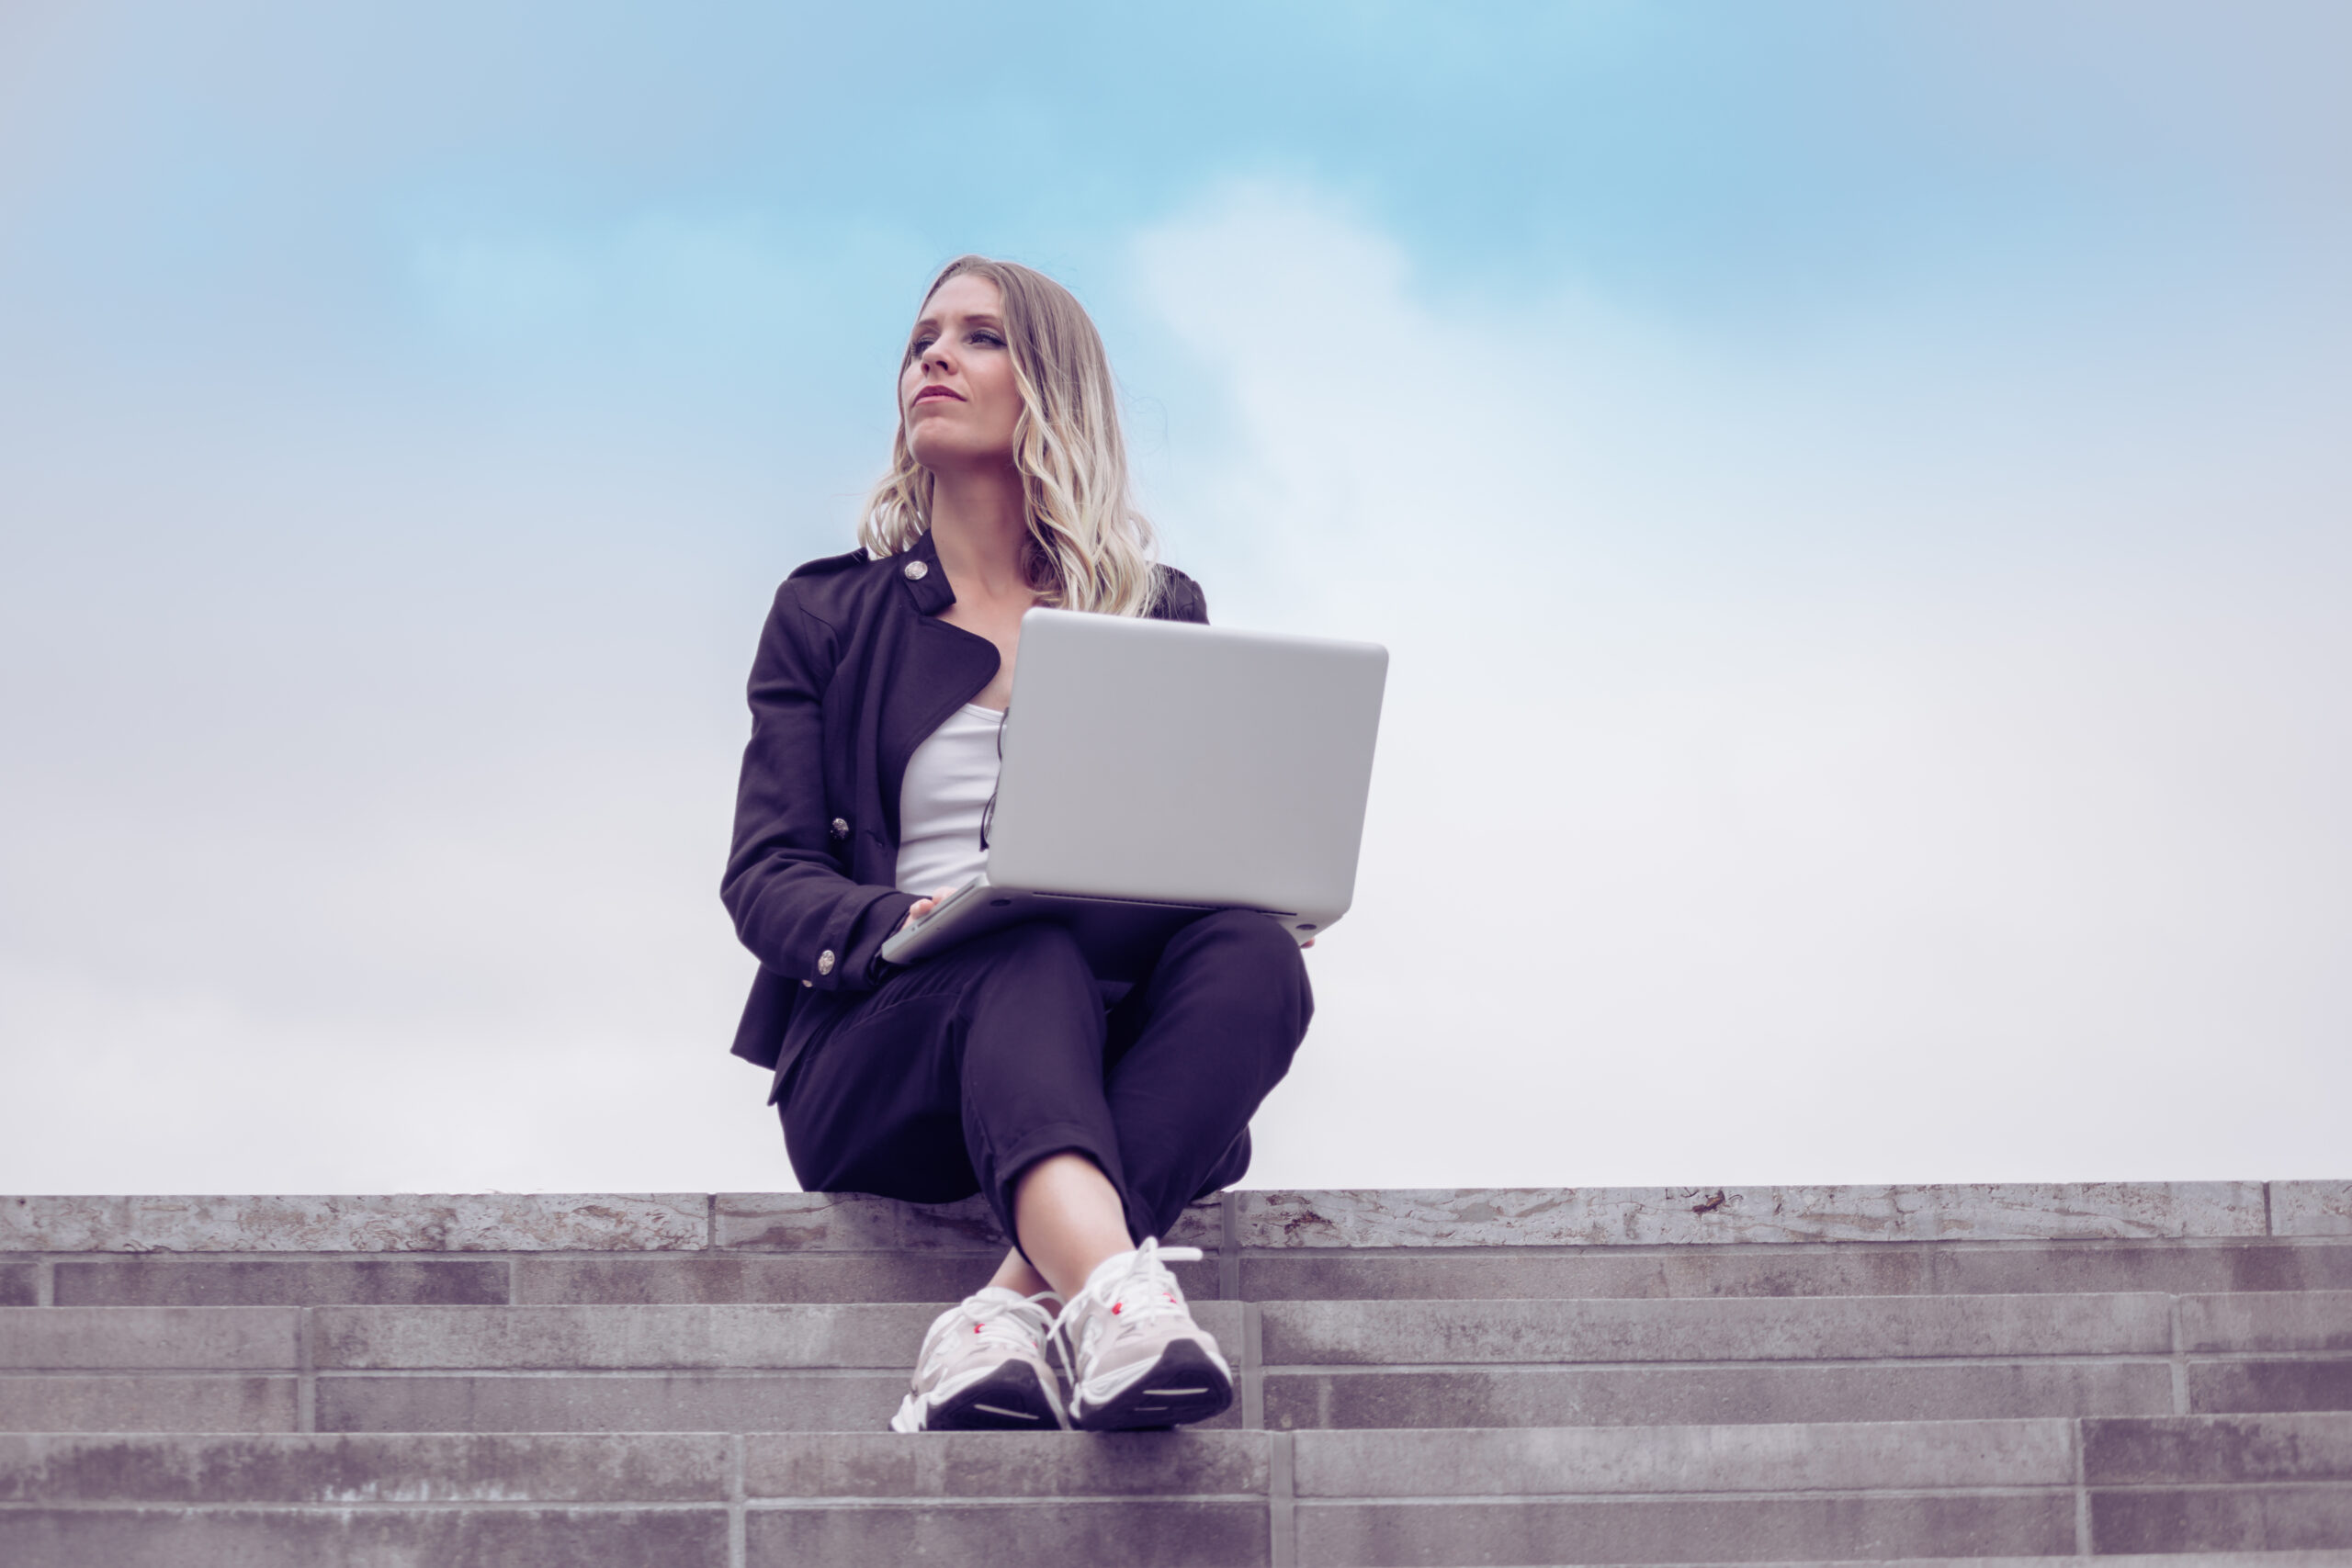 Eine junge Frau arbeitet remote auf ihrem Laptop und schaut mit einem zufriedenen Ausdruck in den Himmel.